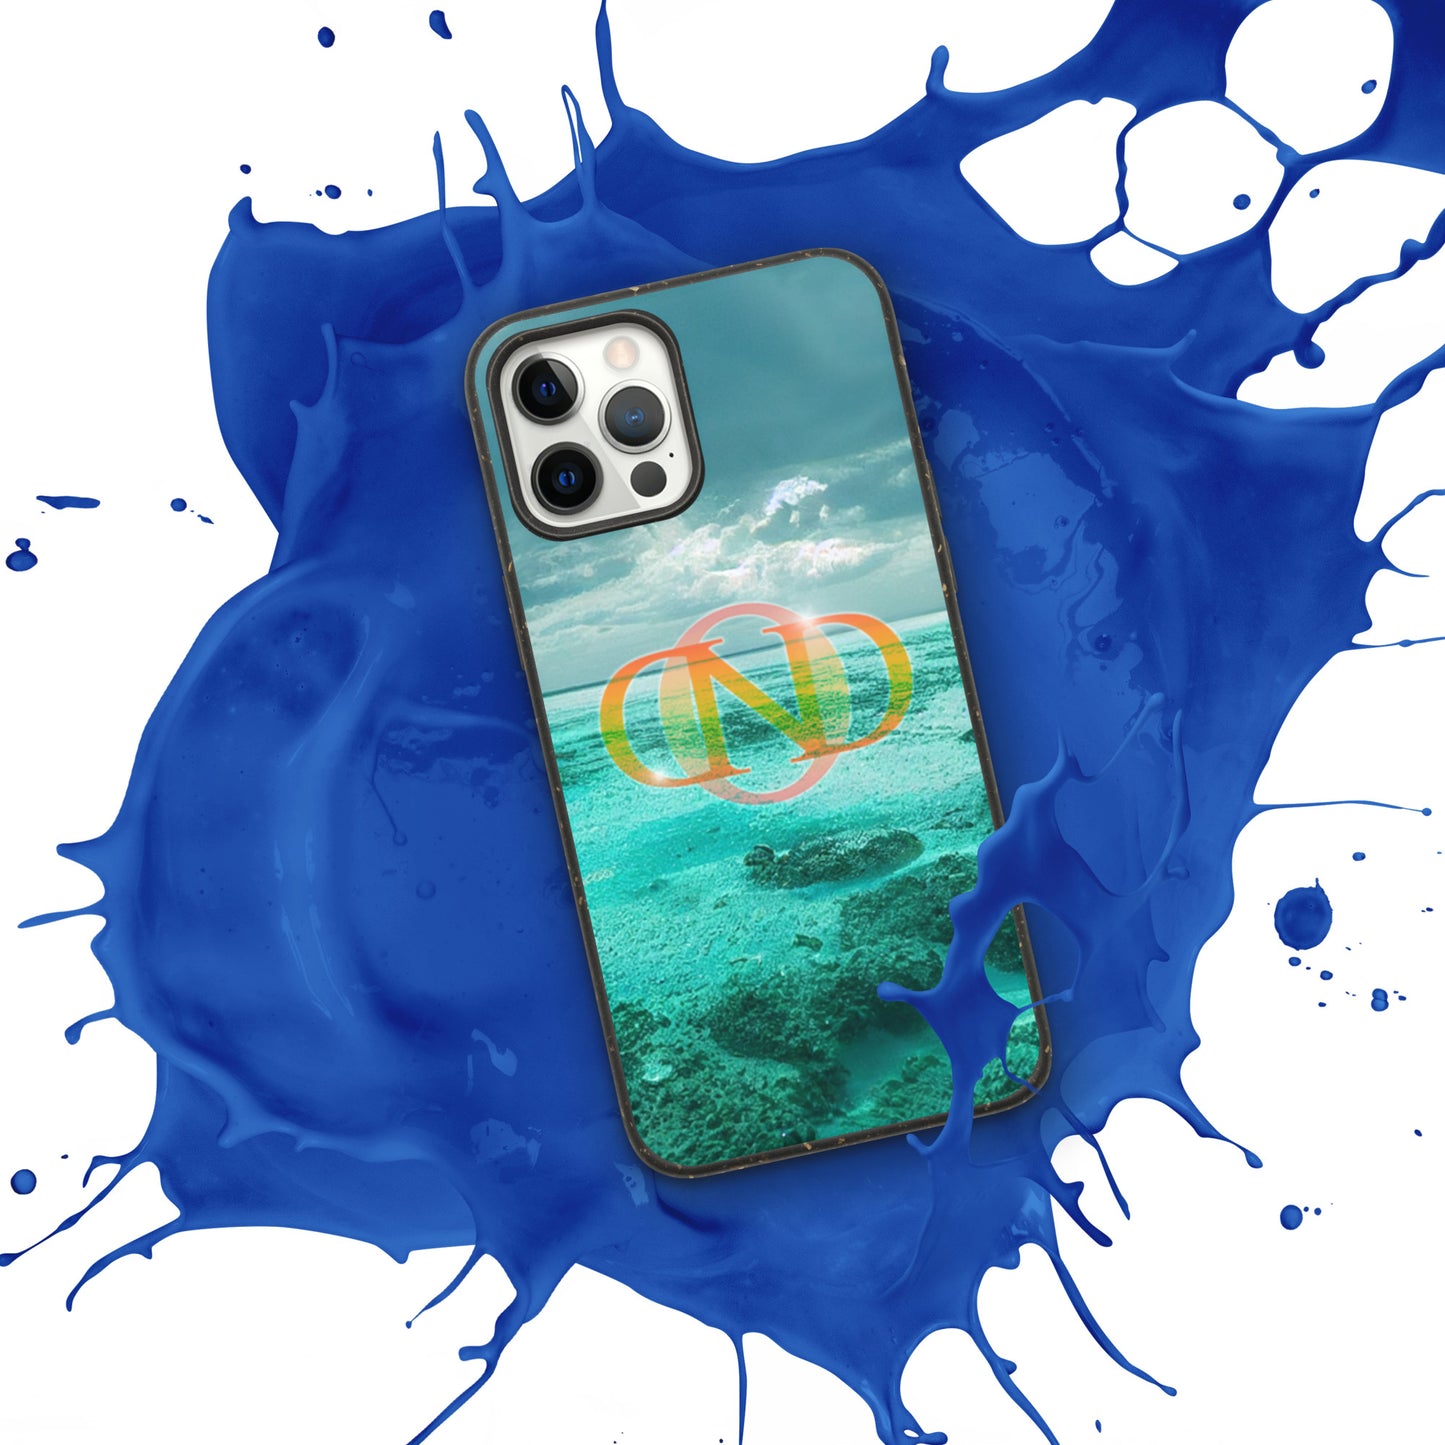 Speckled iPhone case - Nick Olsson Digital Design